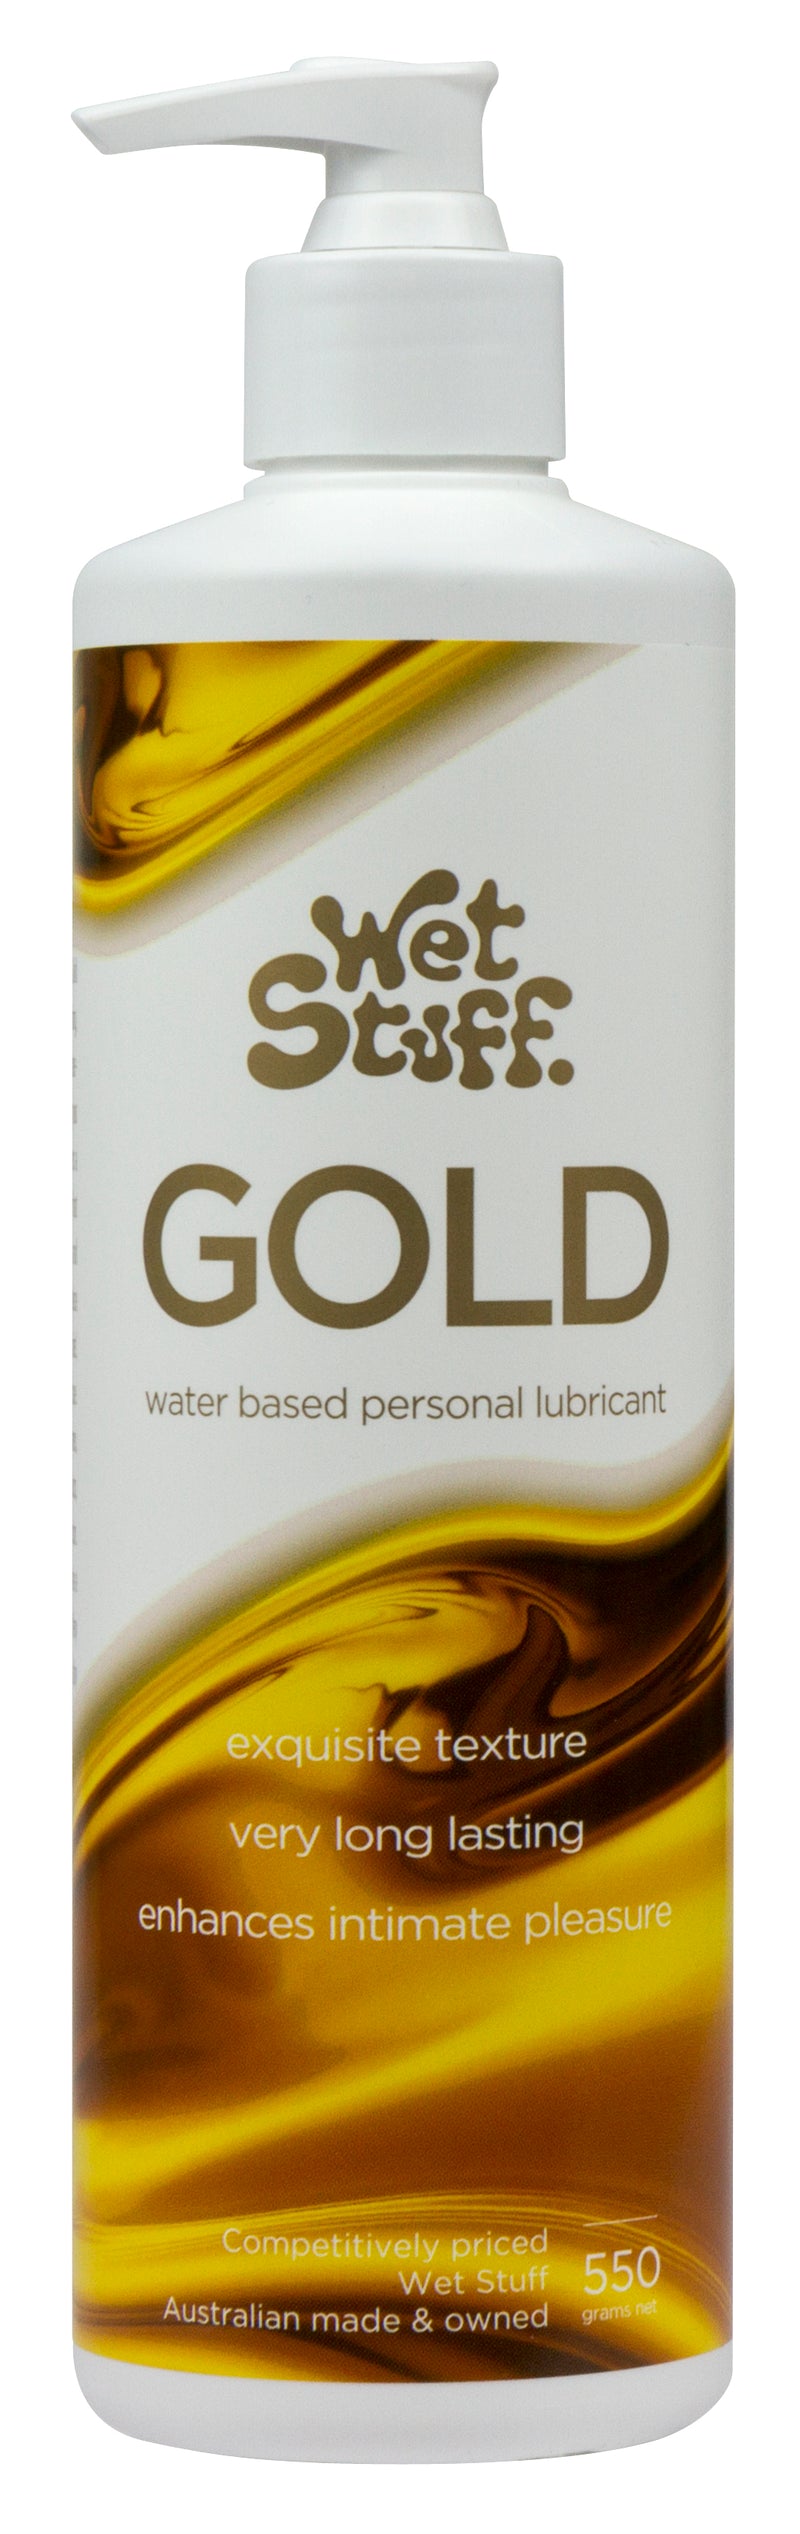 Wet Stuff Gold 550g